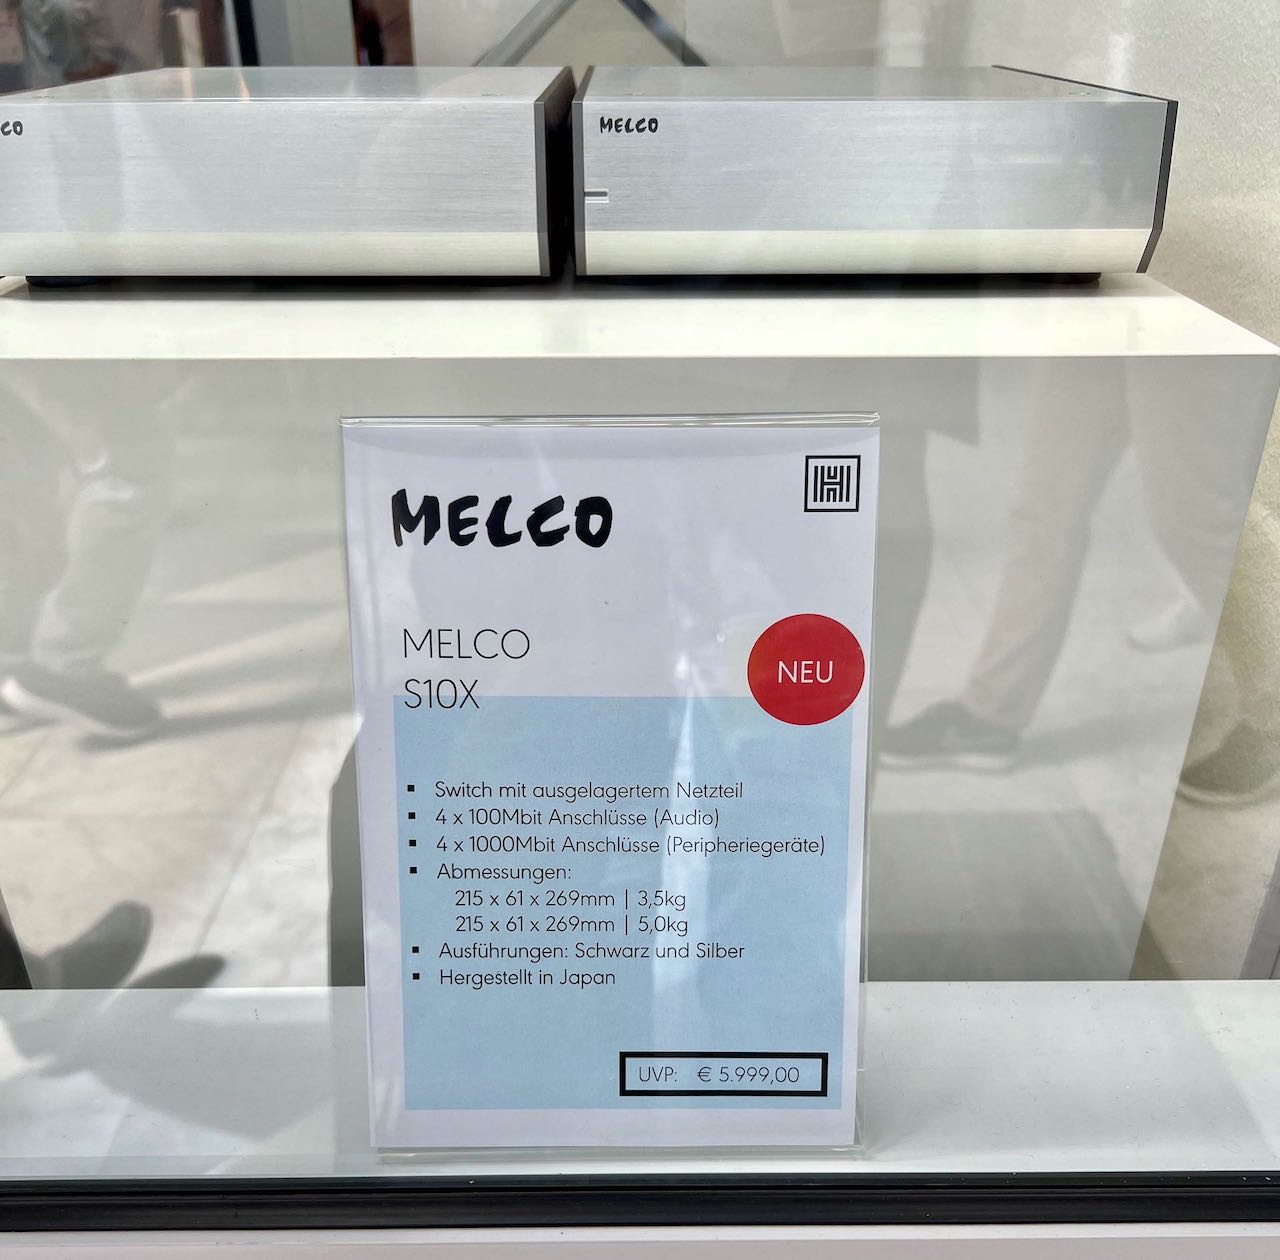 6000 Euro für einen Switch find ich obszön von Melco